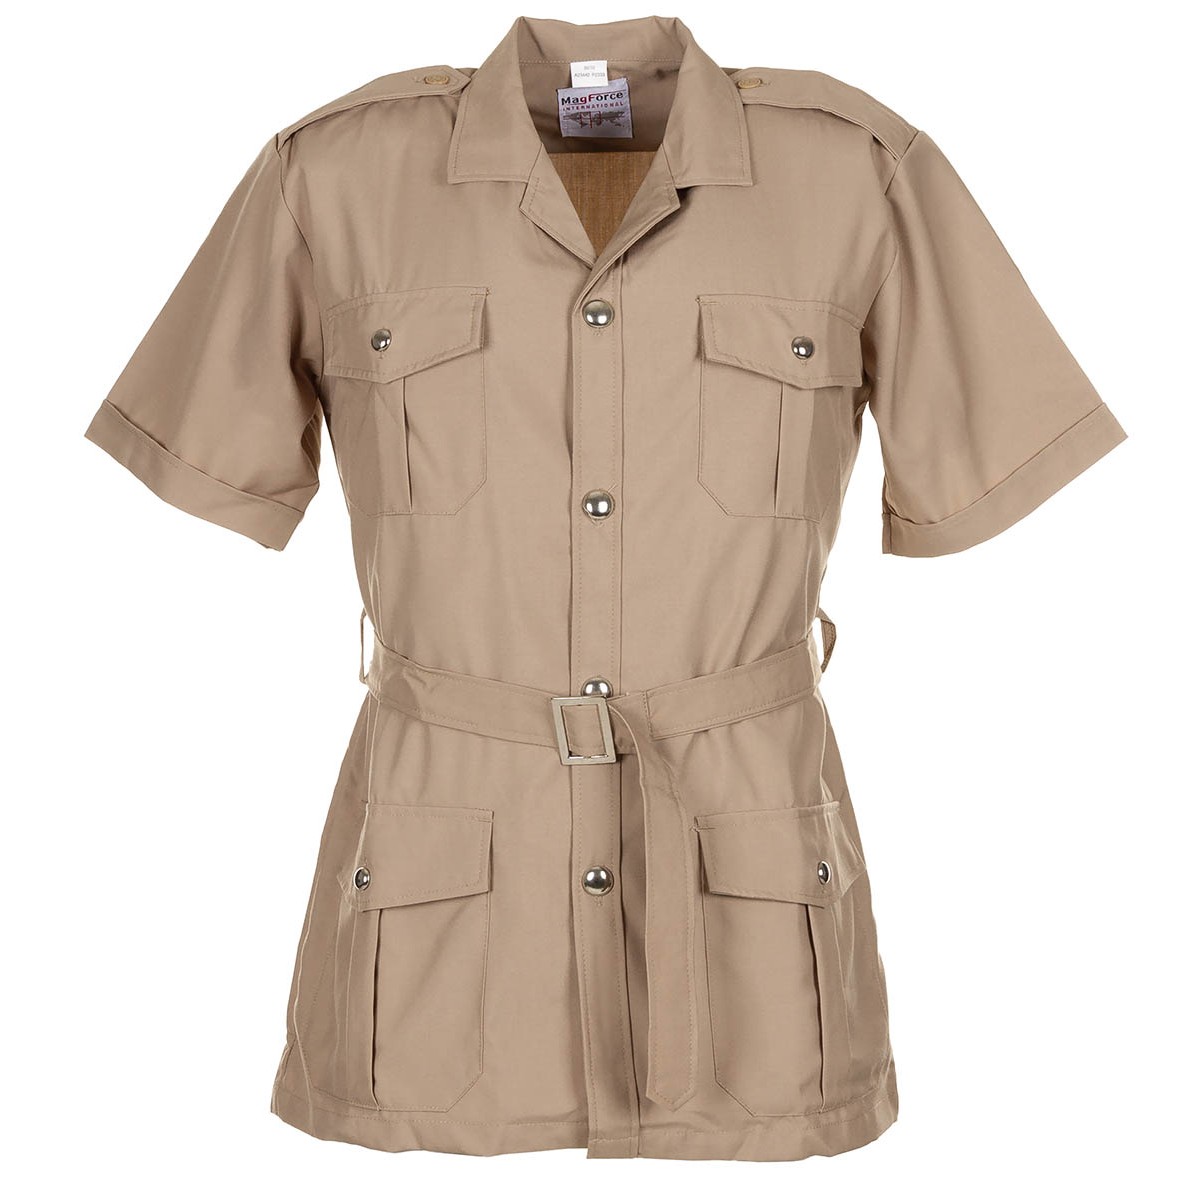 Tropická blůza francouzská košile Safari khaki MagForce® Velikost: 96/100 krátký rukáv